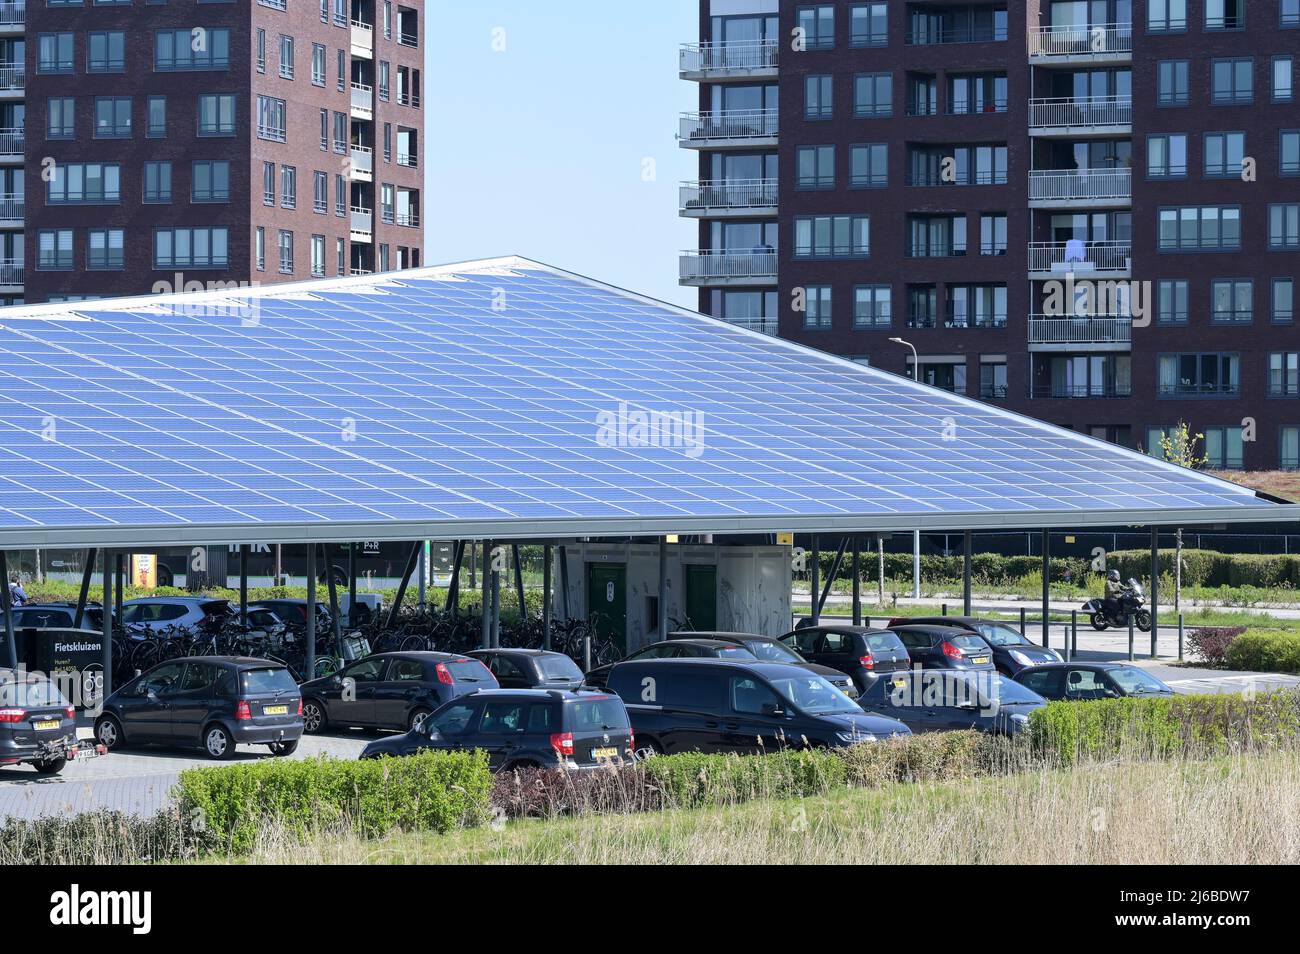 NETHERLANDS, Groningen, Reitdiep, P+R Park and Ride parking place with solar panel / NIEDERLANDE, Groningen, Park und Ride Parkplatz mit Solardach Stock Photo